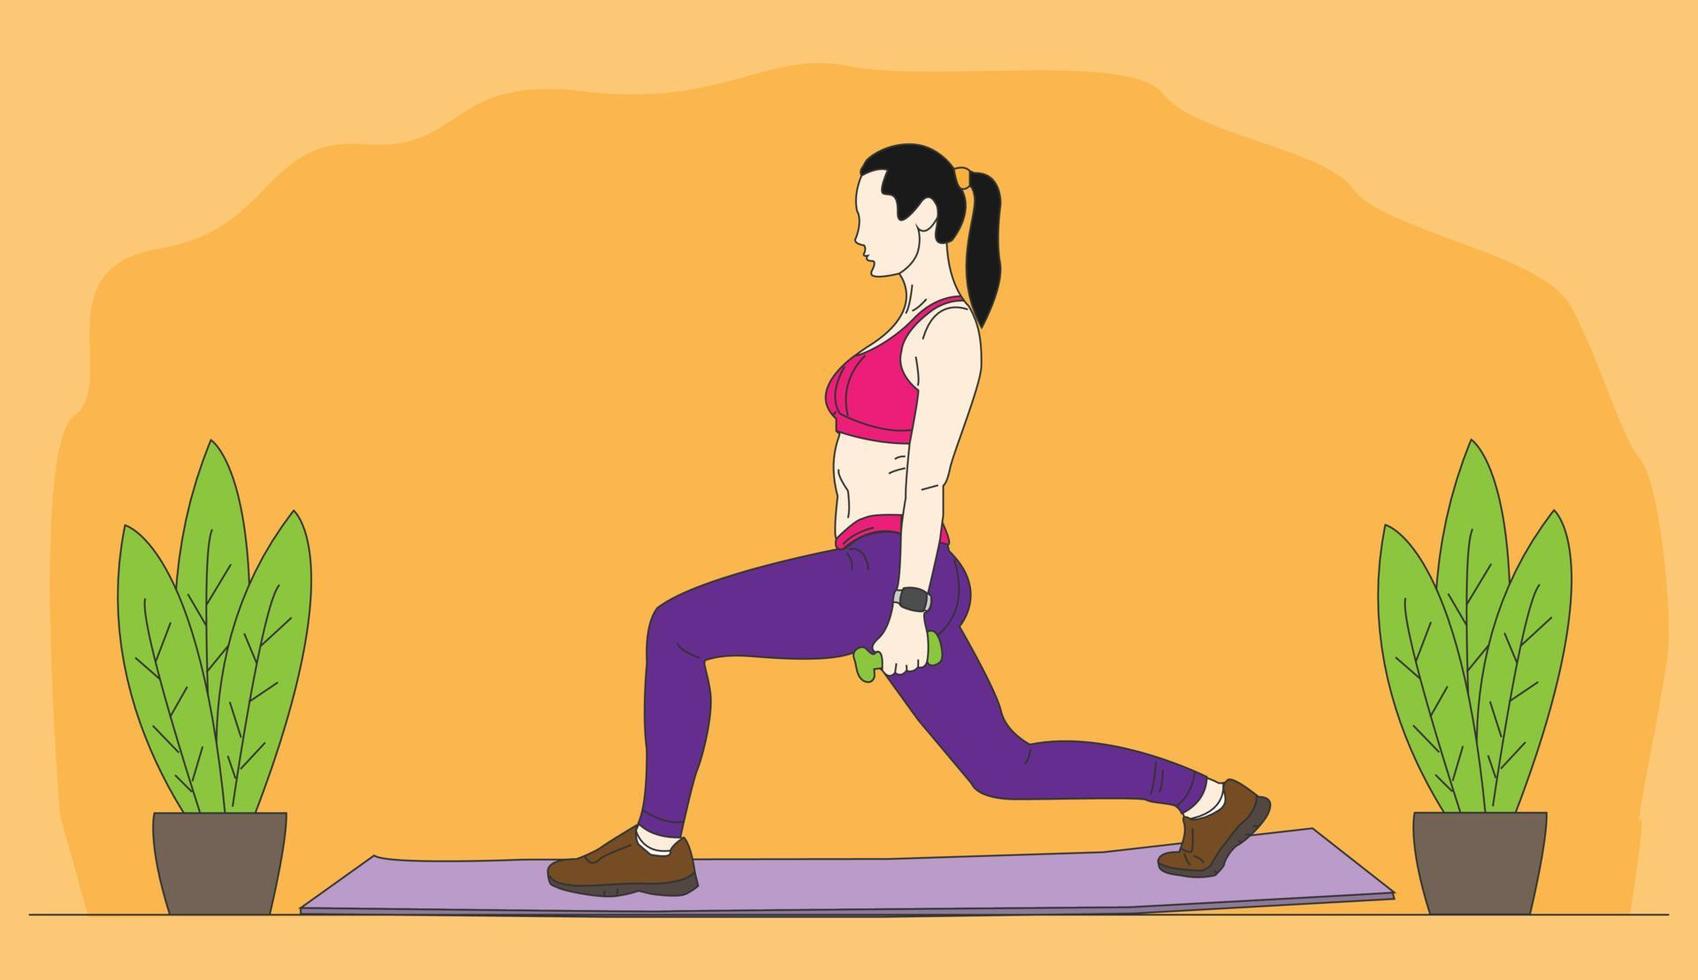 ilustração de uma mulher se exercitando. linda mulher fazendo ioga no tapete. estilo minimalista dos desenhos animados. ilustração vetorial plana vetor